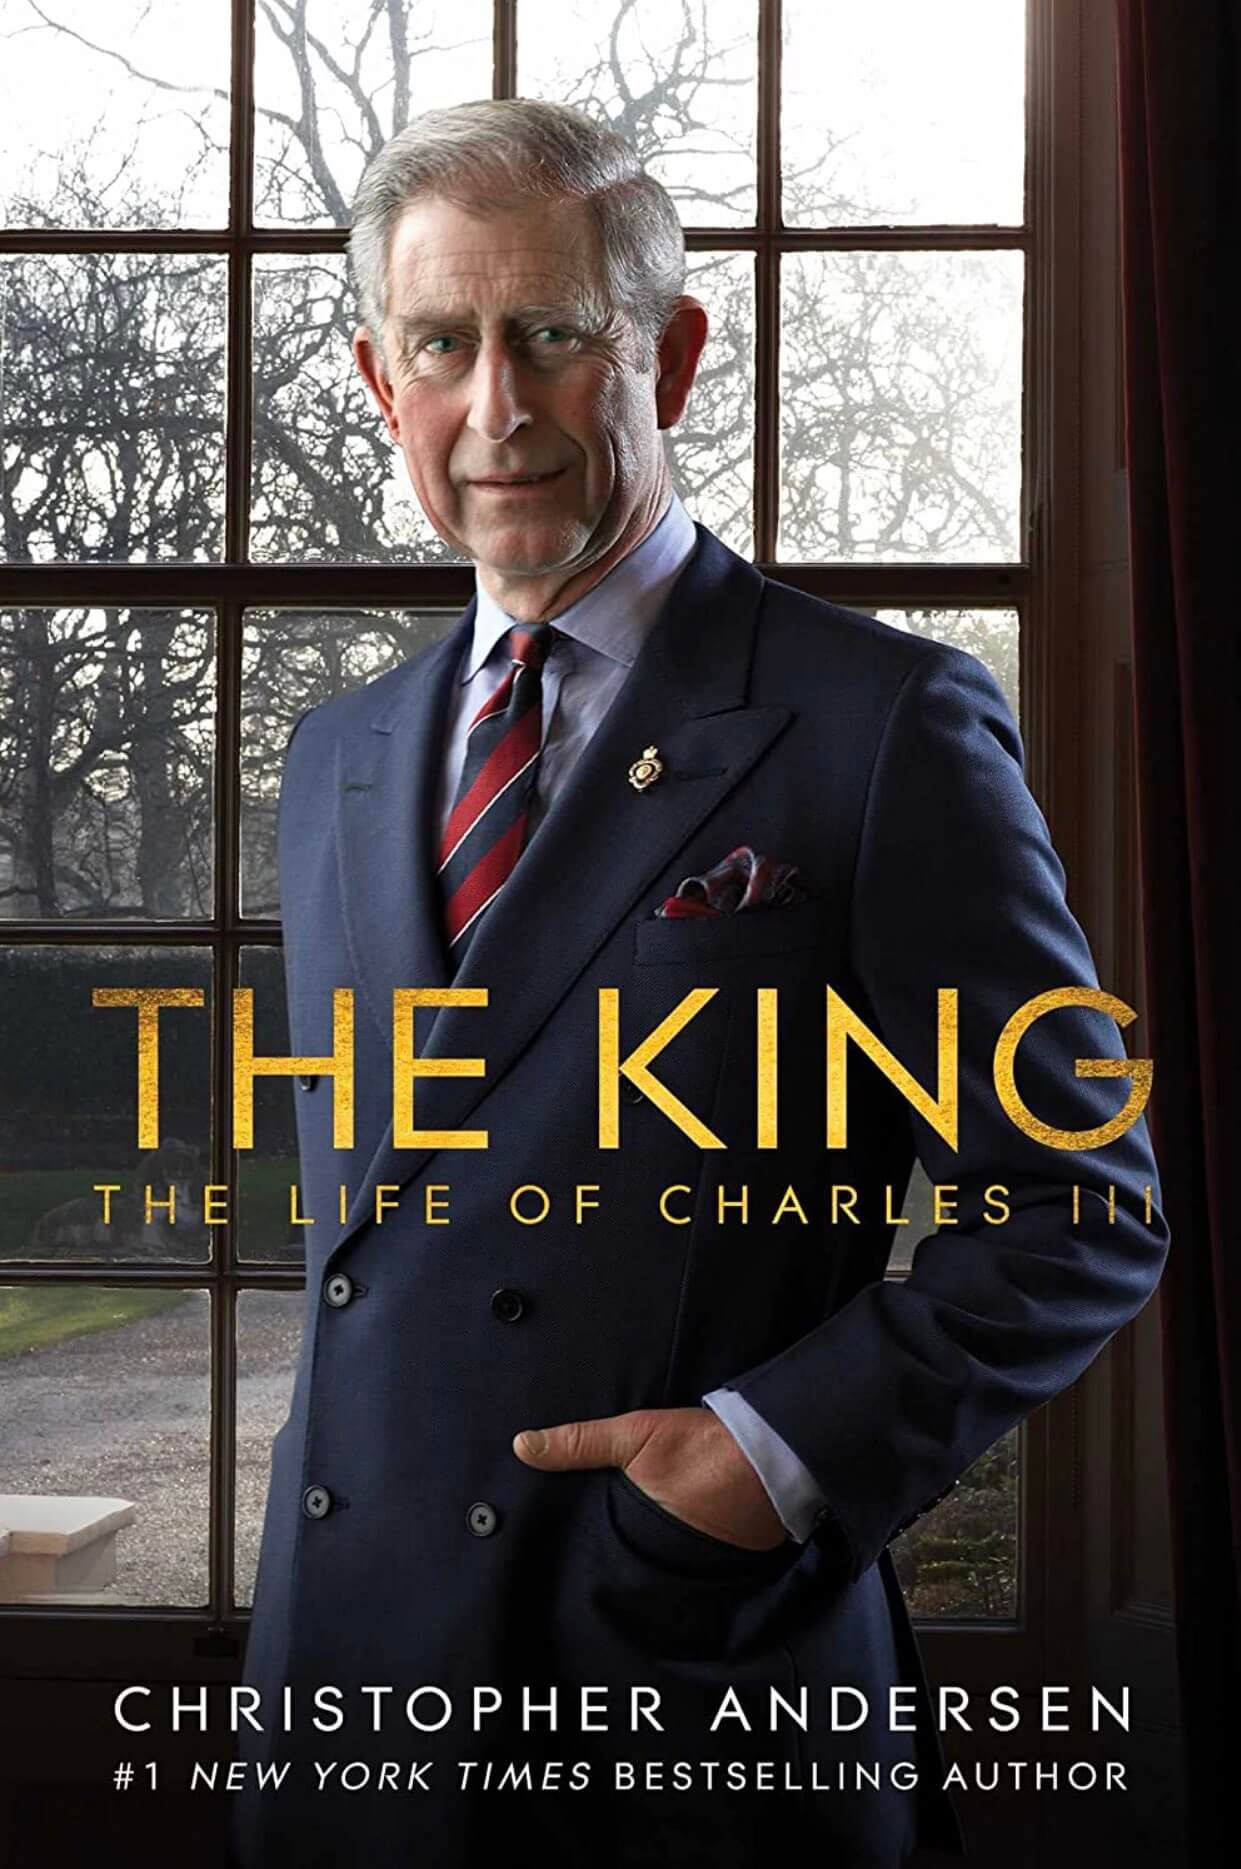 Re Carlo III è gay? Fu lui a dirlo, pur di non far sesso con Diana - The King The Life of Charles III - Gay.it